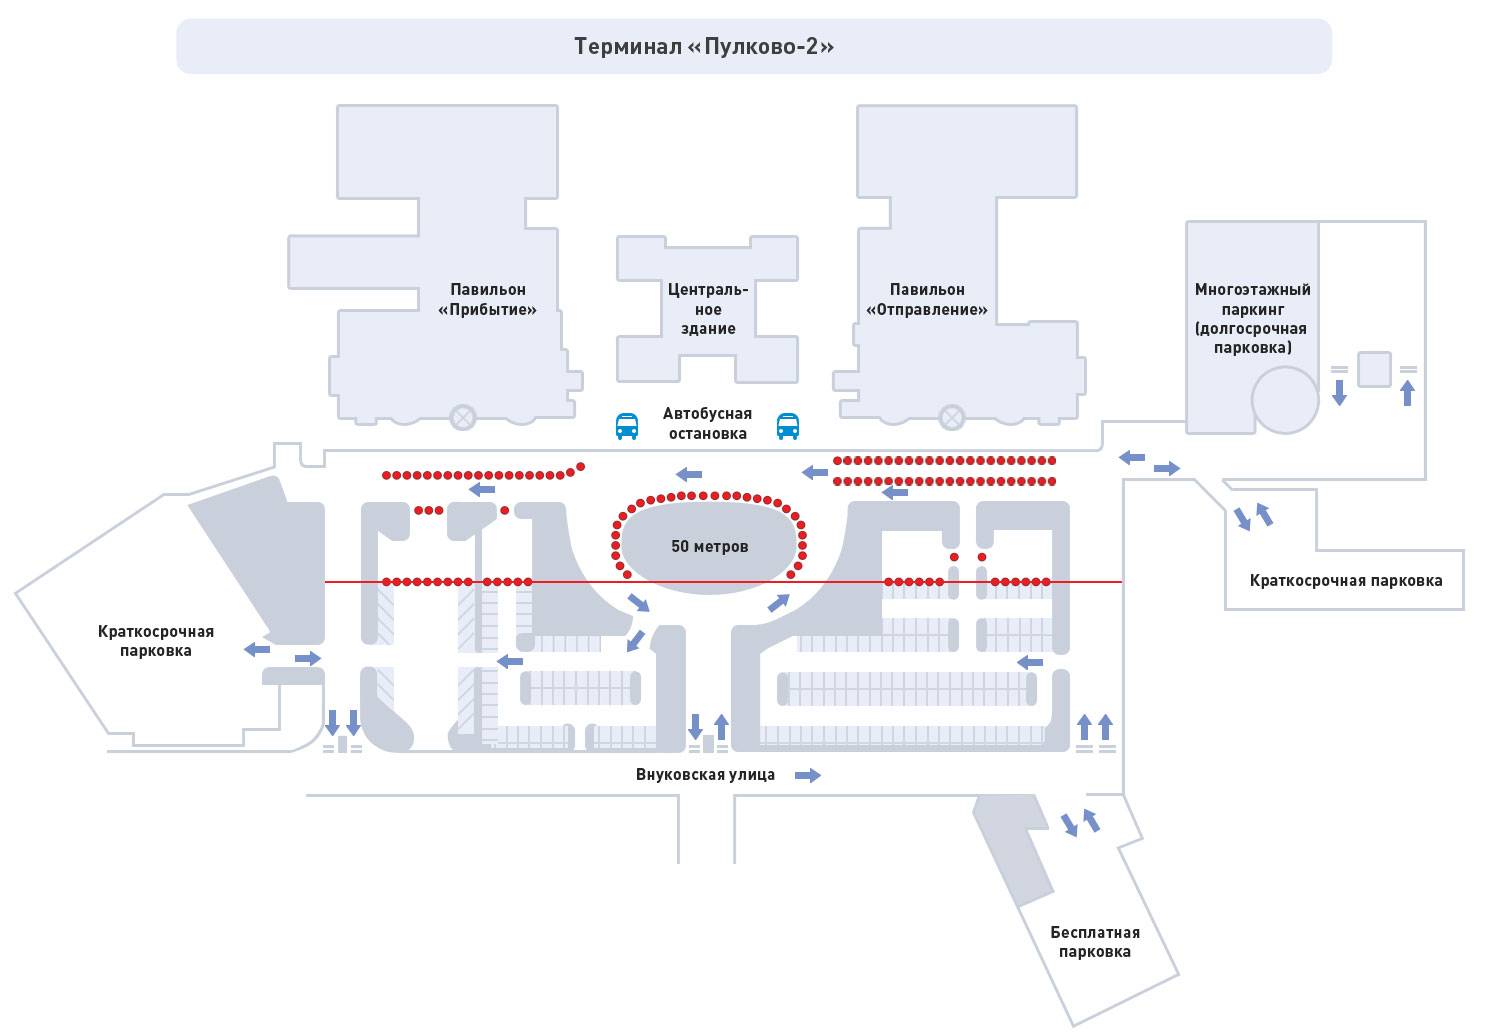 Аэропорт пулково: схема, план здания, зона вылета и где находится в санкт-петербурге, какой он внутри, сколько там терминалов, кроме нового 1 и международного 2?